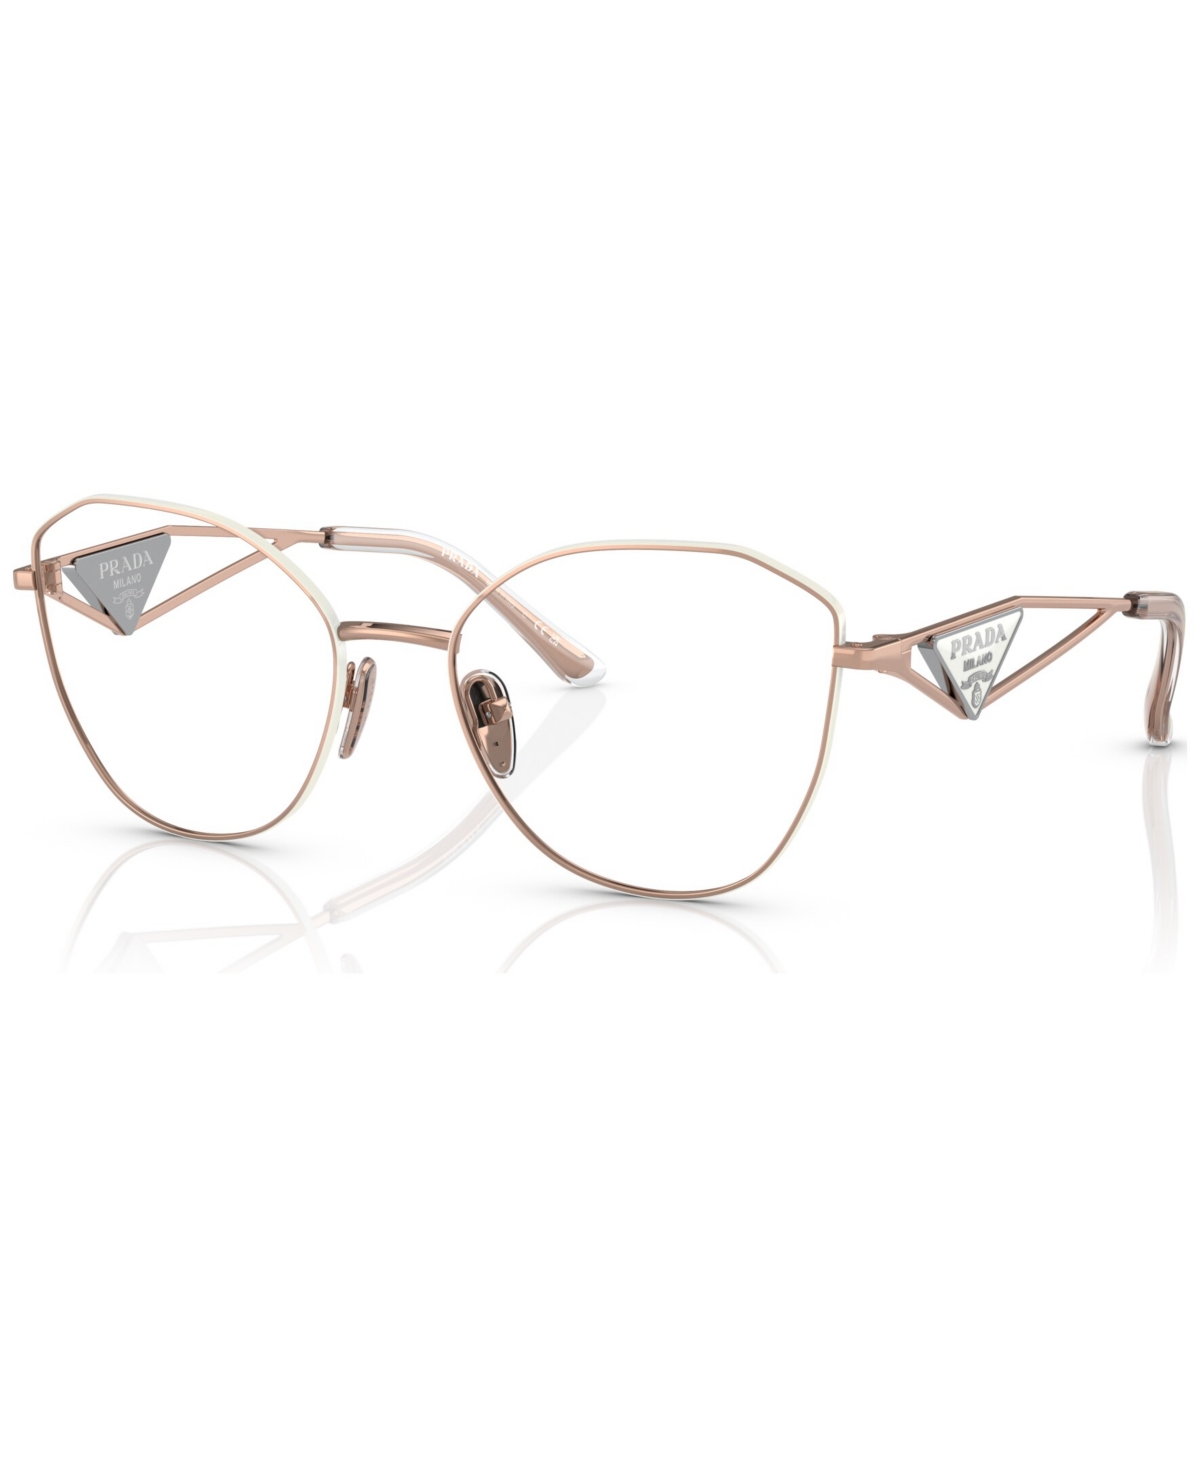 Women's Irregular Eyeglasses, Pr 52ZV55-o - Pink Gold-Tone